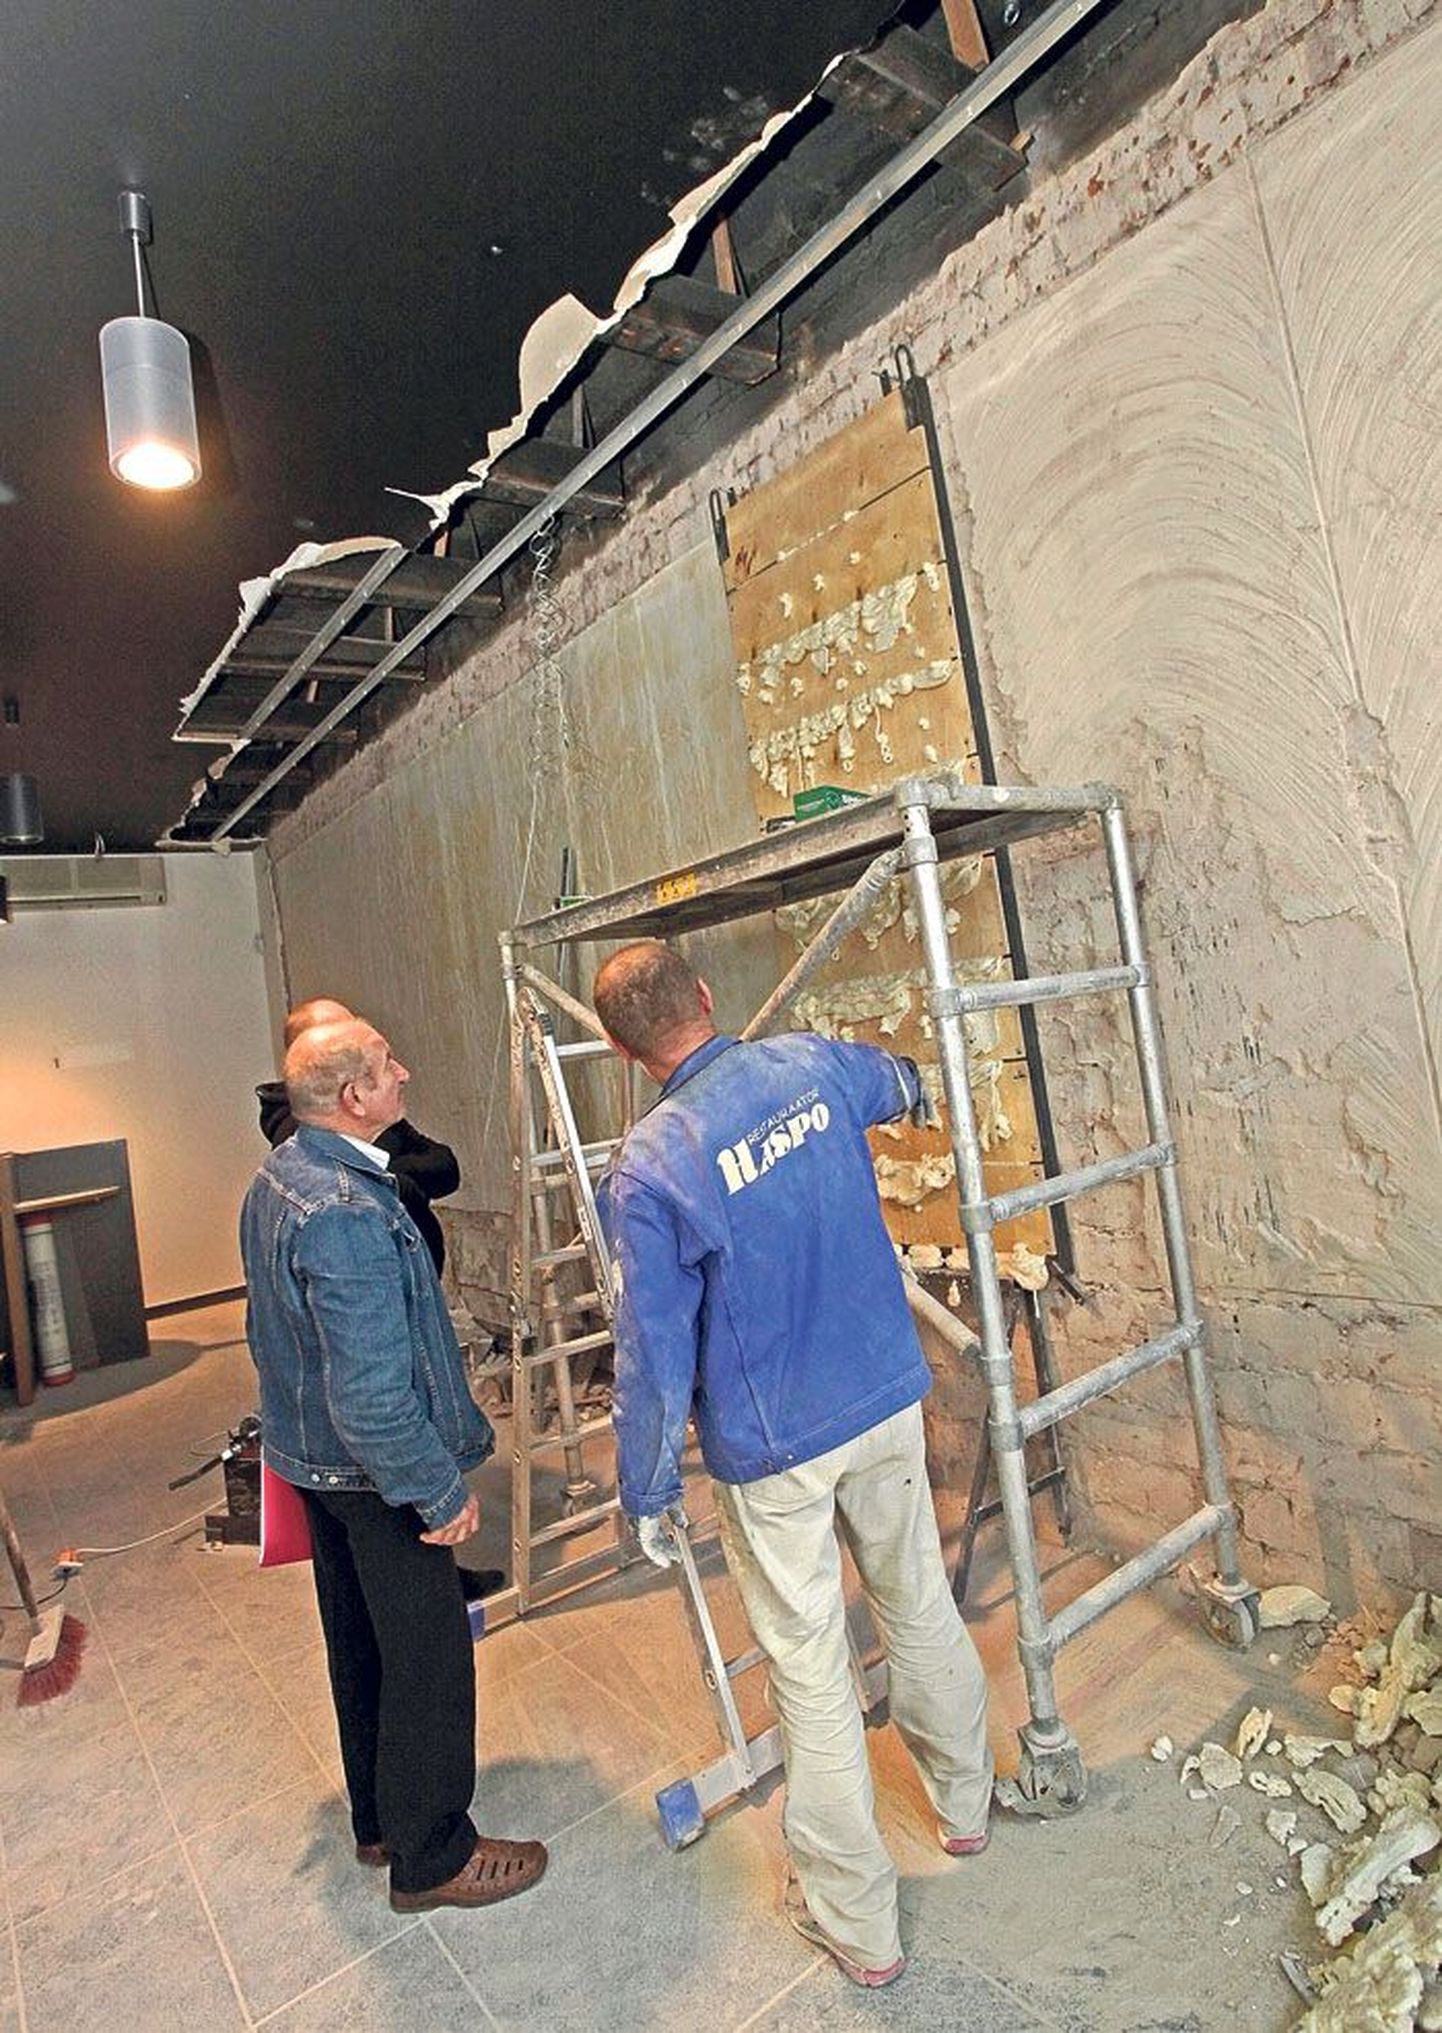 Restaureerimisfirma Haspo töötajad võtsid eile vanas kaubamajas maha kunstnik Elmar Kitse pannoo kolmandat paneeli.